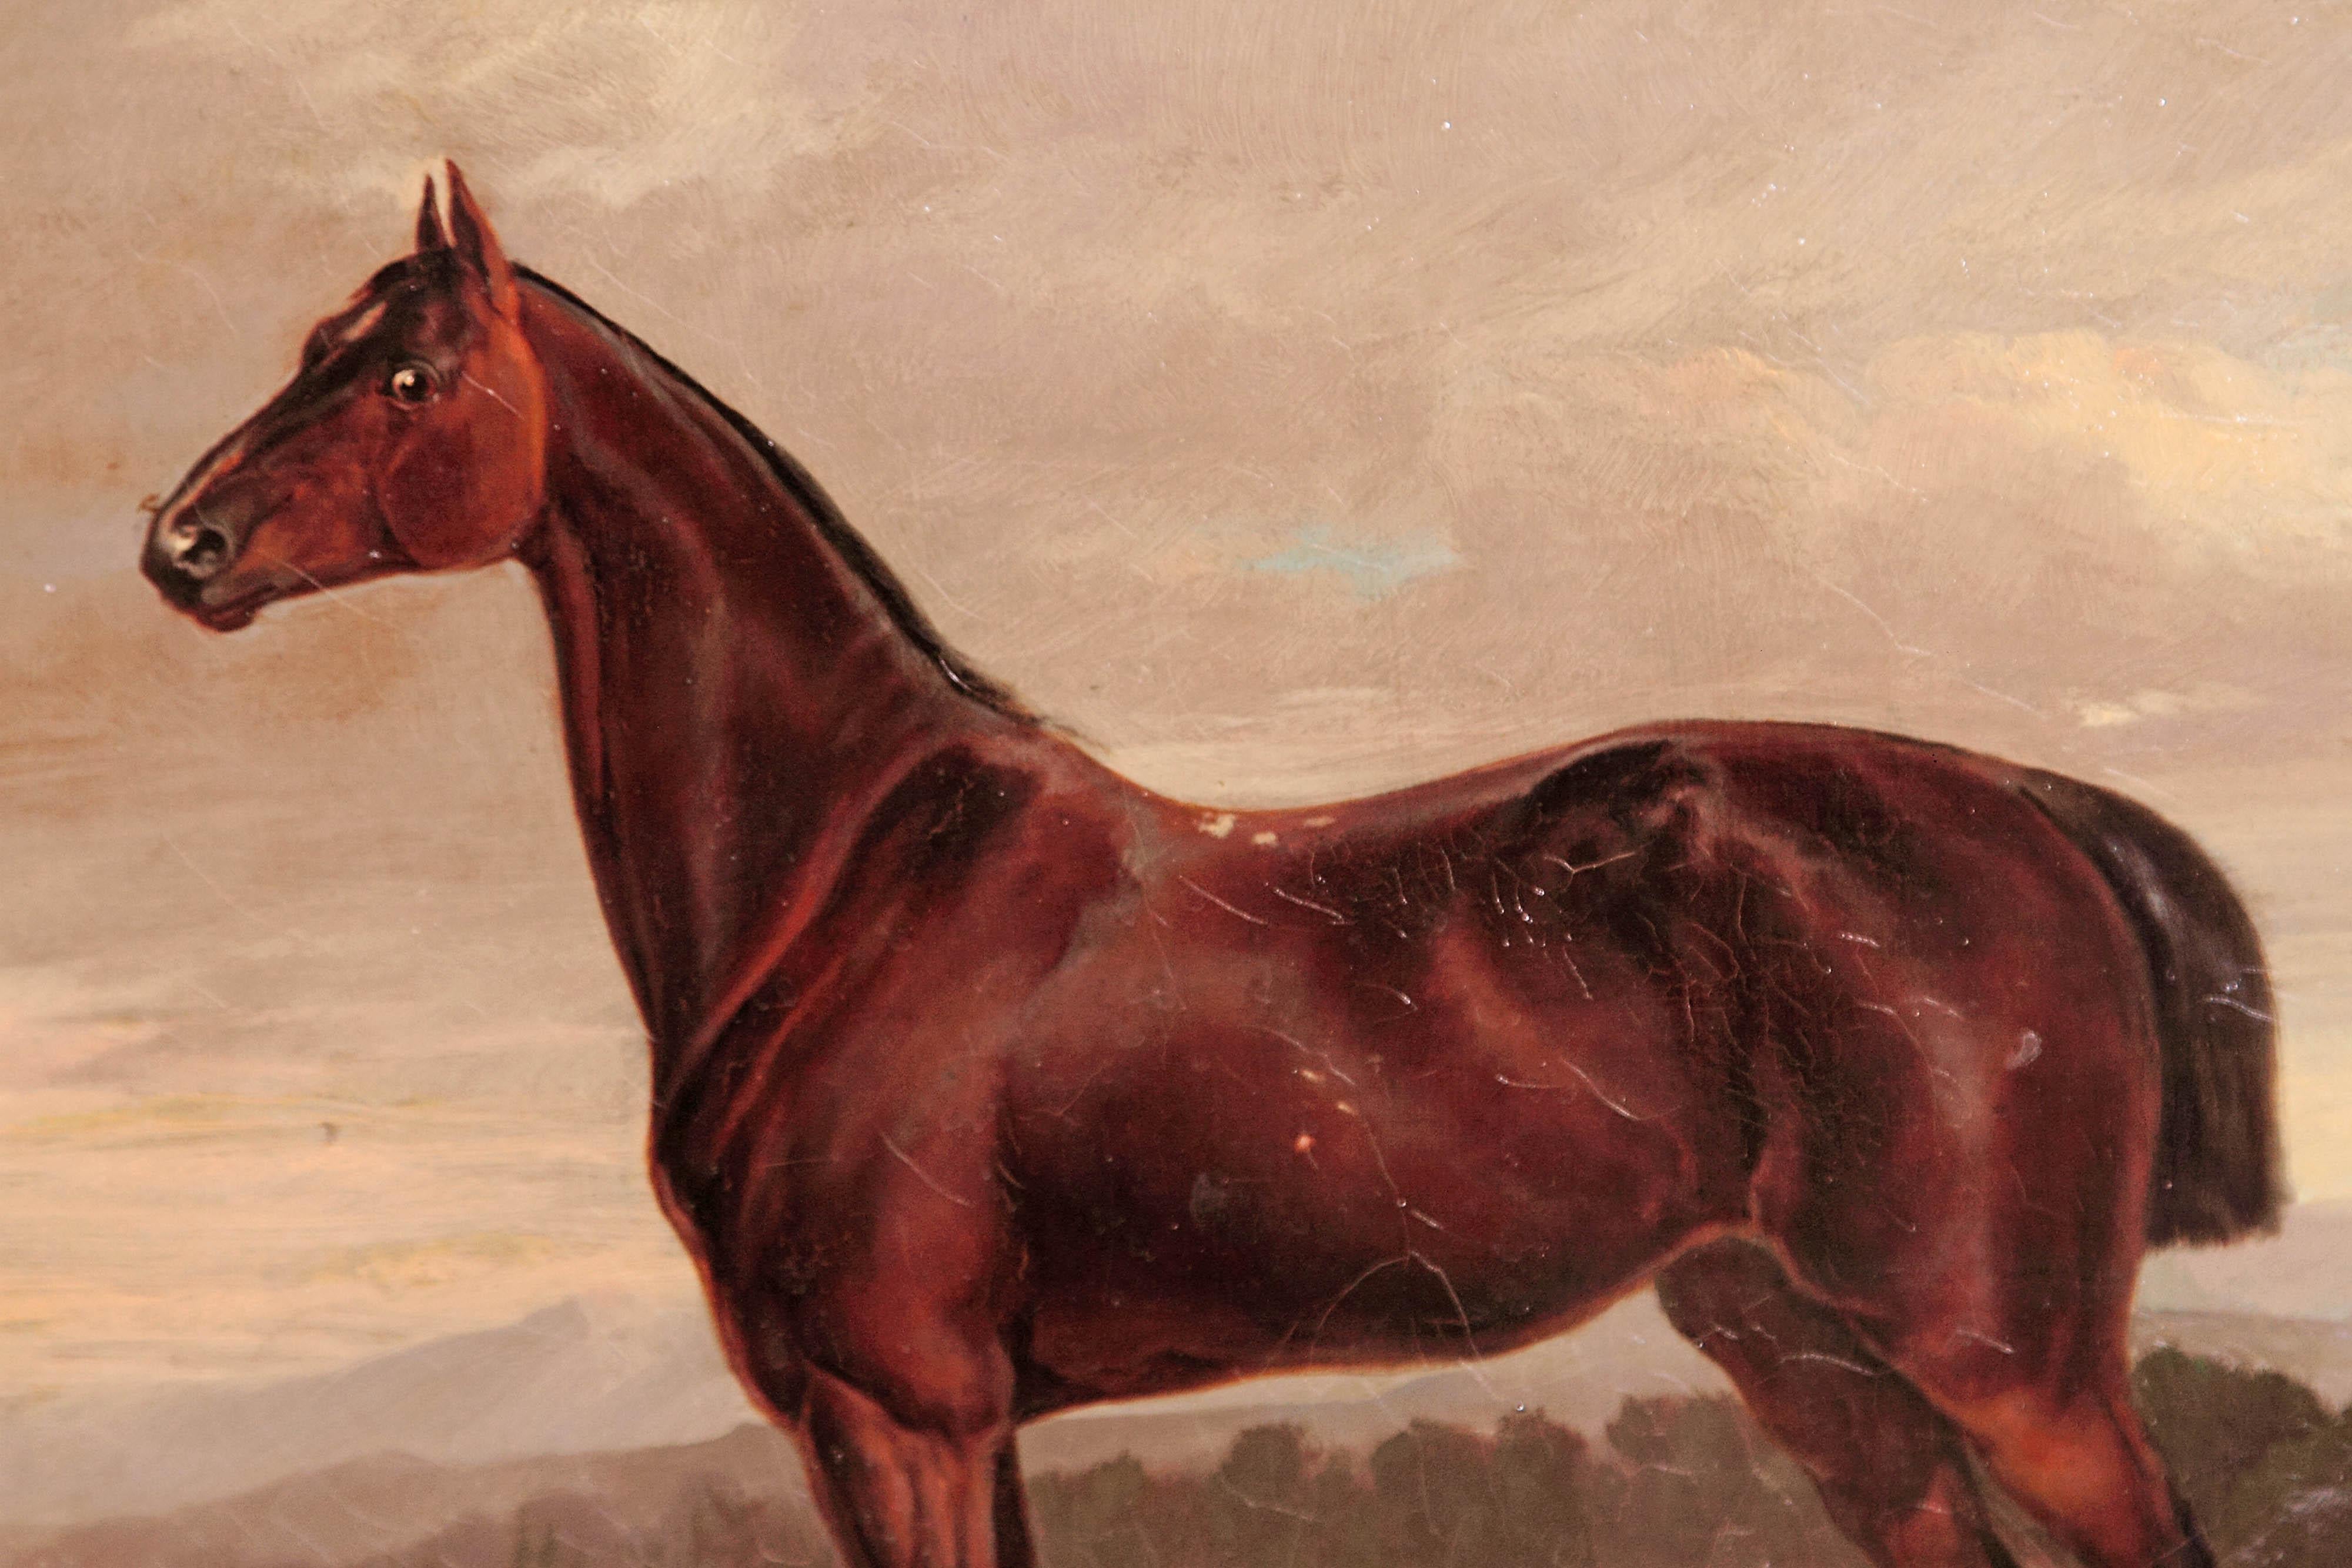 19th Century Equine Portrait by German Artist Albert Richter